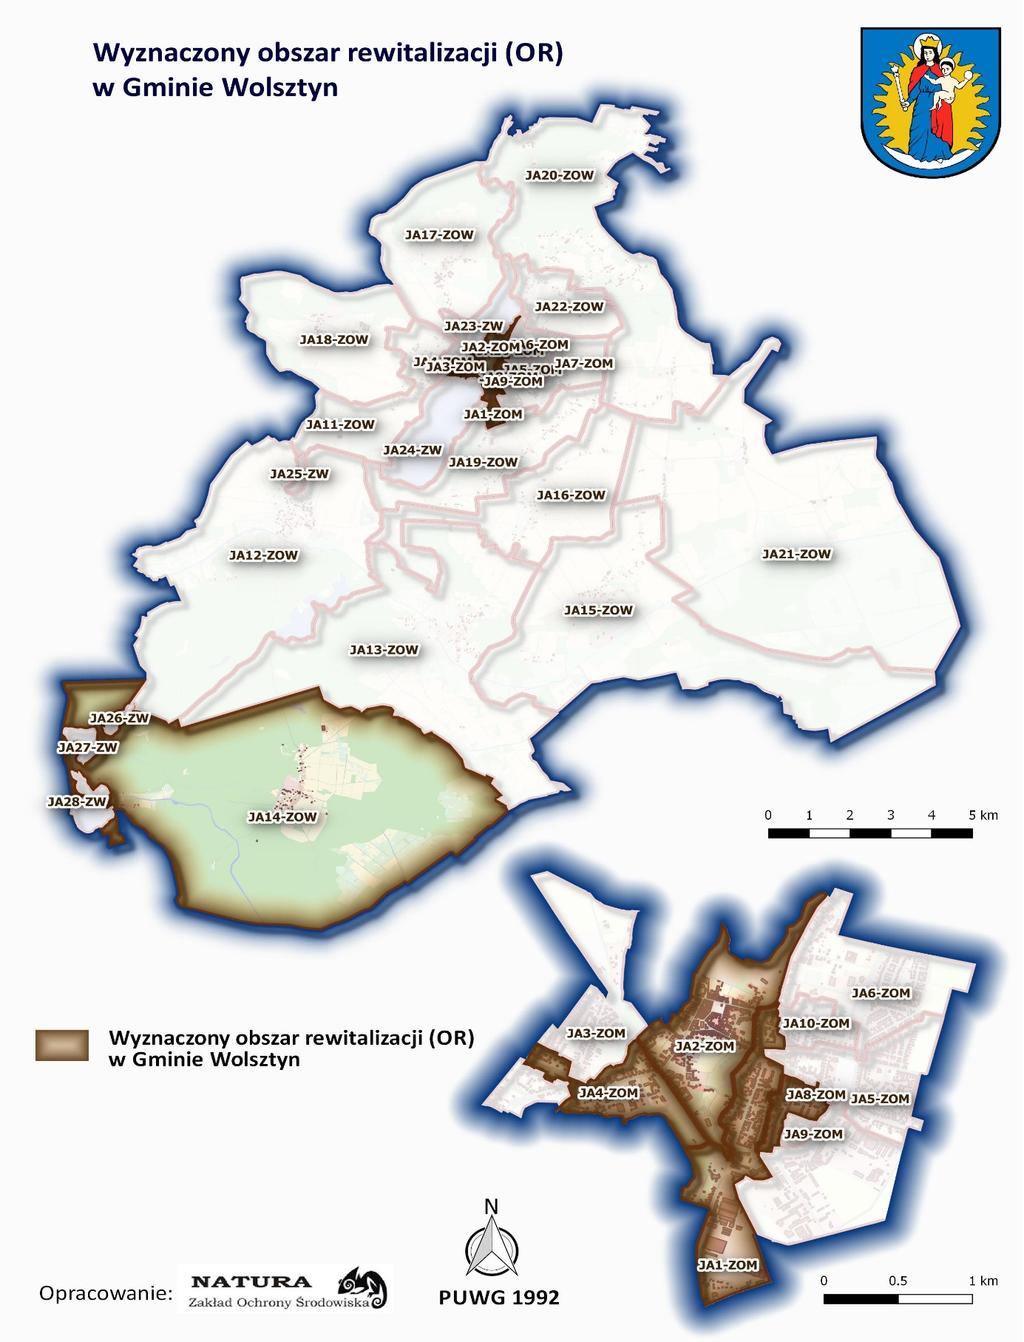 Rycina 21 przedstawia wyznaczony obszar rewitalizacji (OR) w gminie Wolsztyn.